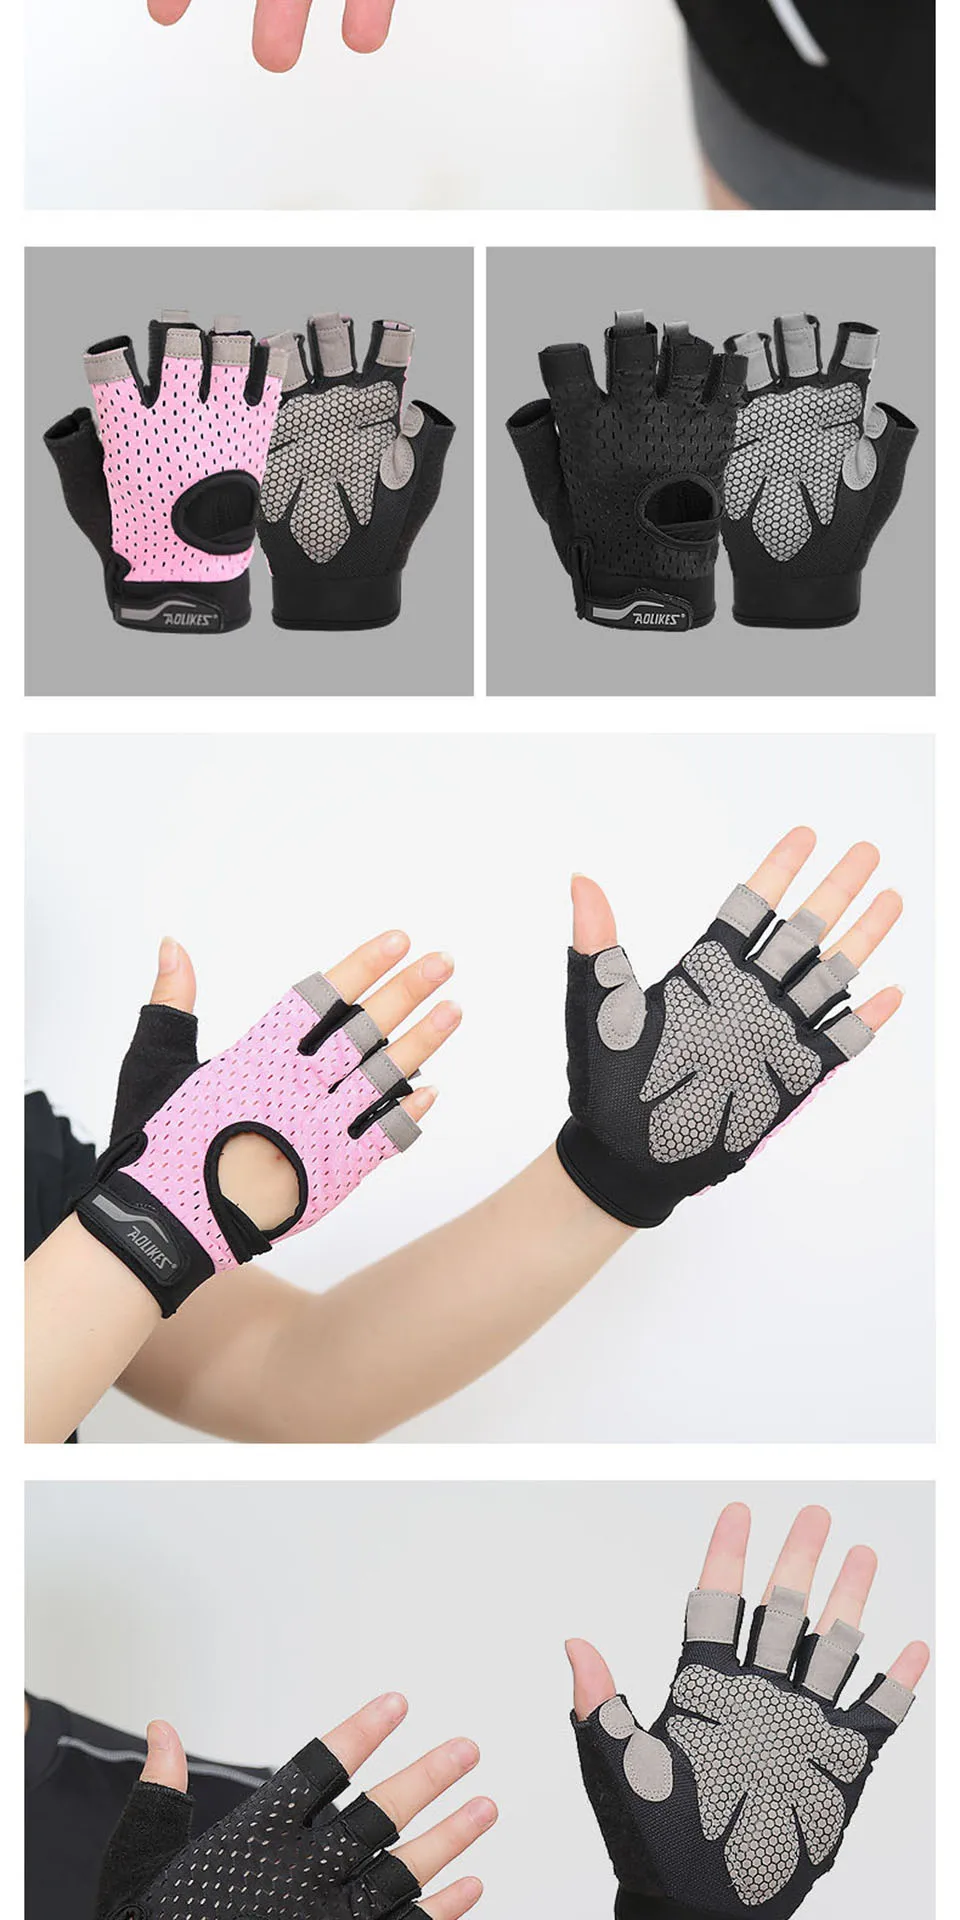 AOLIKES профессиональные перчатки для тренажерного зала, перчатки для упражнений, мужские перчатки для защиты рук, дышащие спортивные перчатки, спортивные перчатки для фитнеса, перчатки для тяжелой атлетики